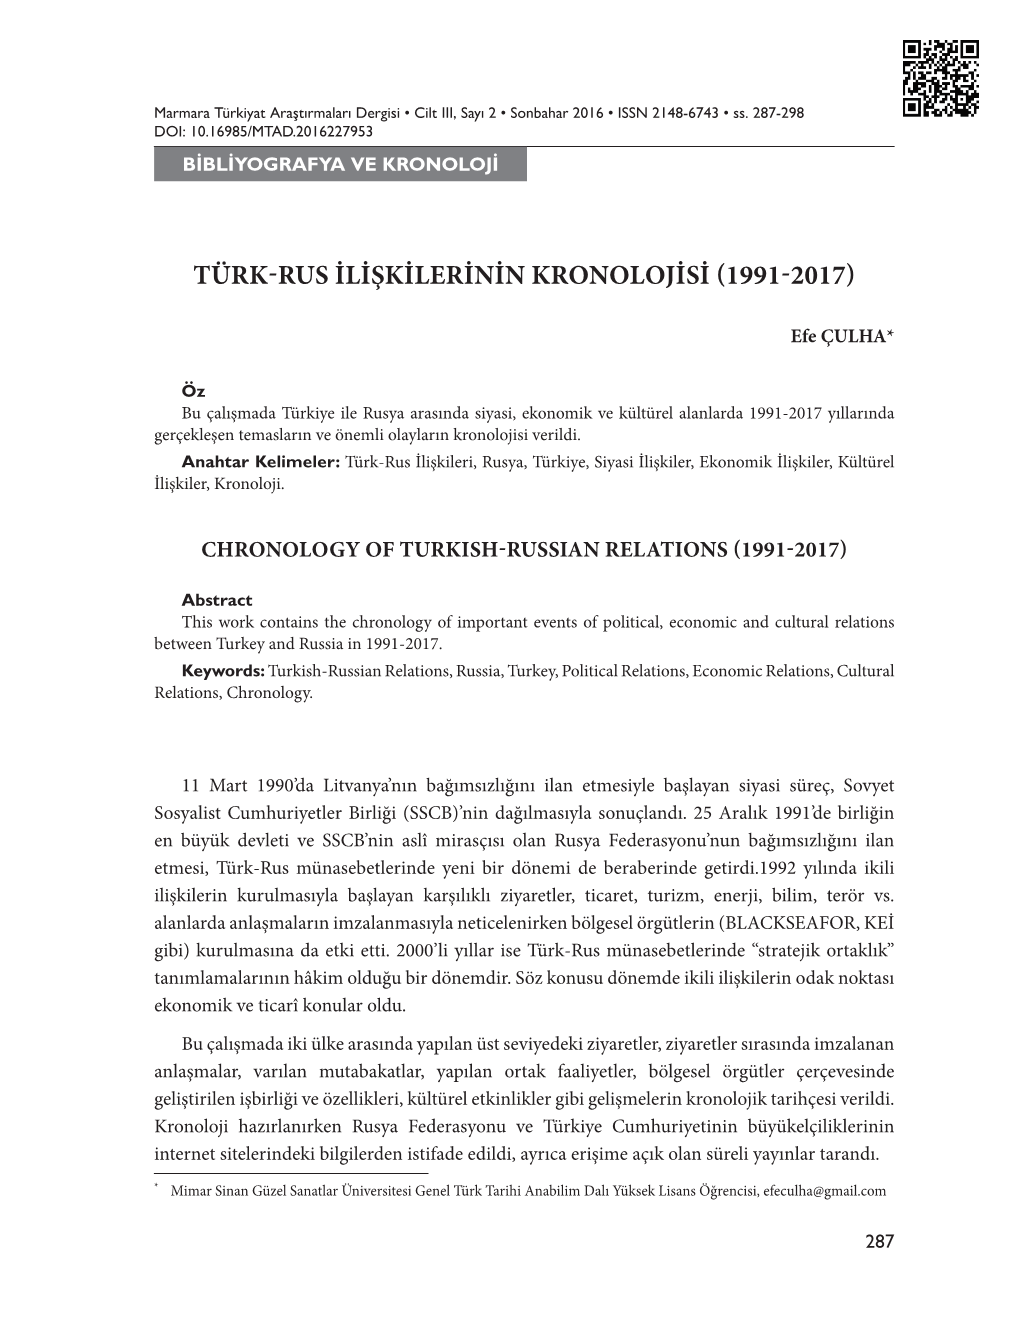 Türk-Rus İlişkilerinin Kronolojisi (1991-2017)